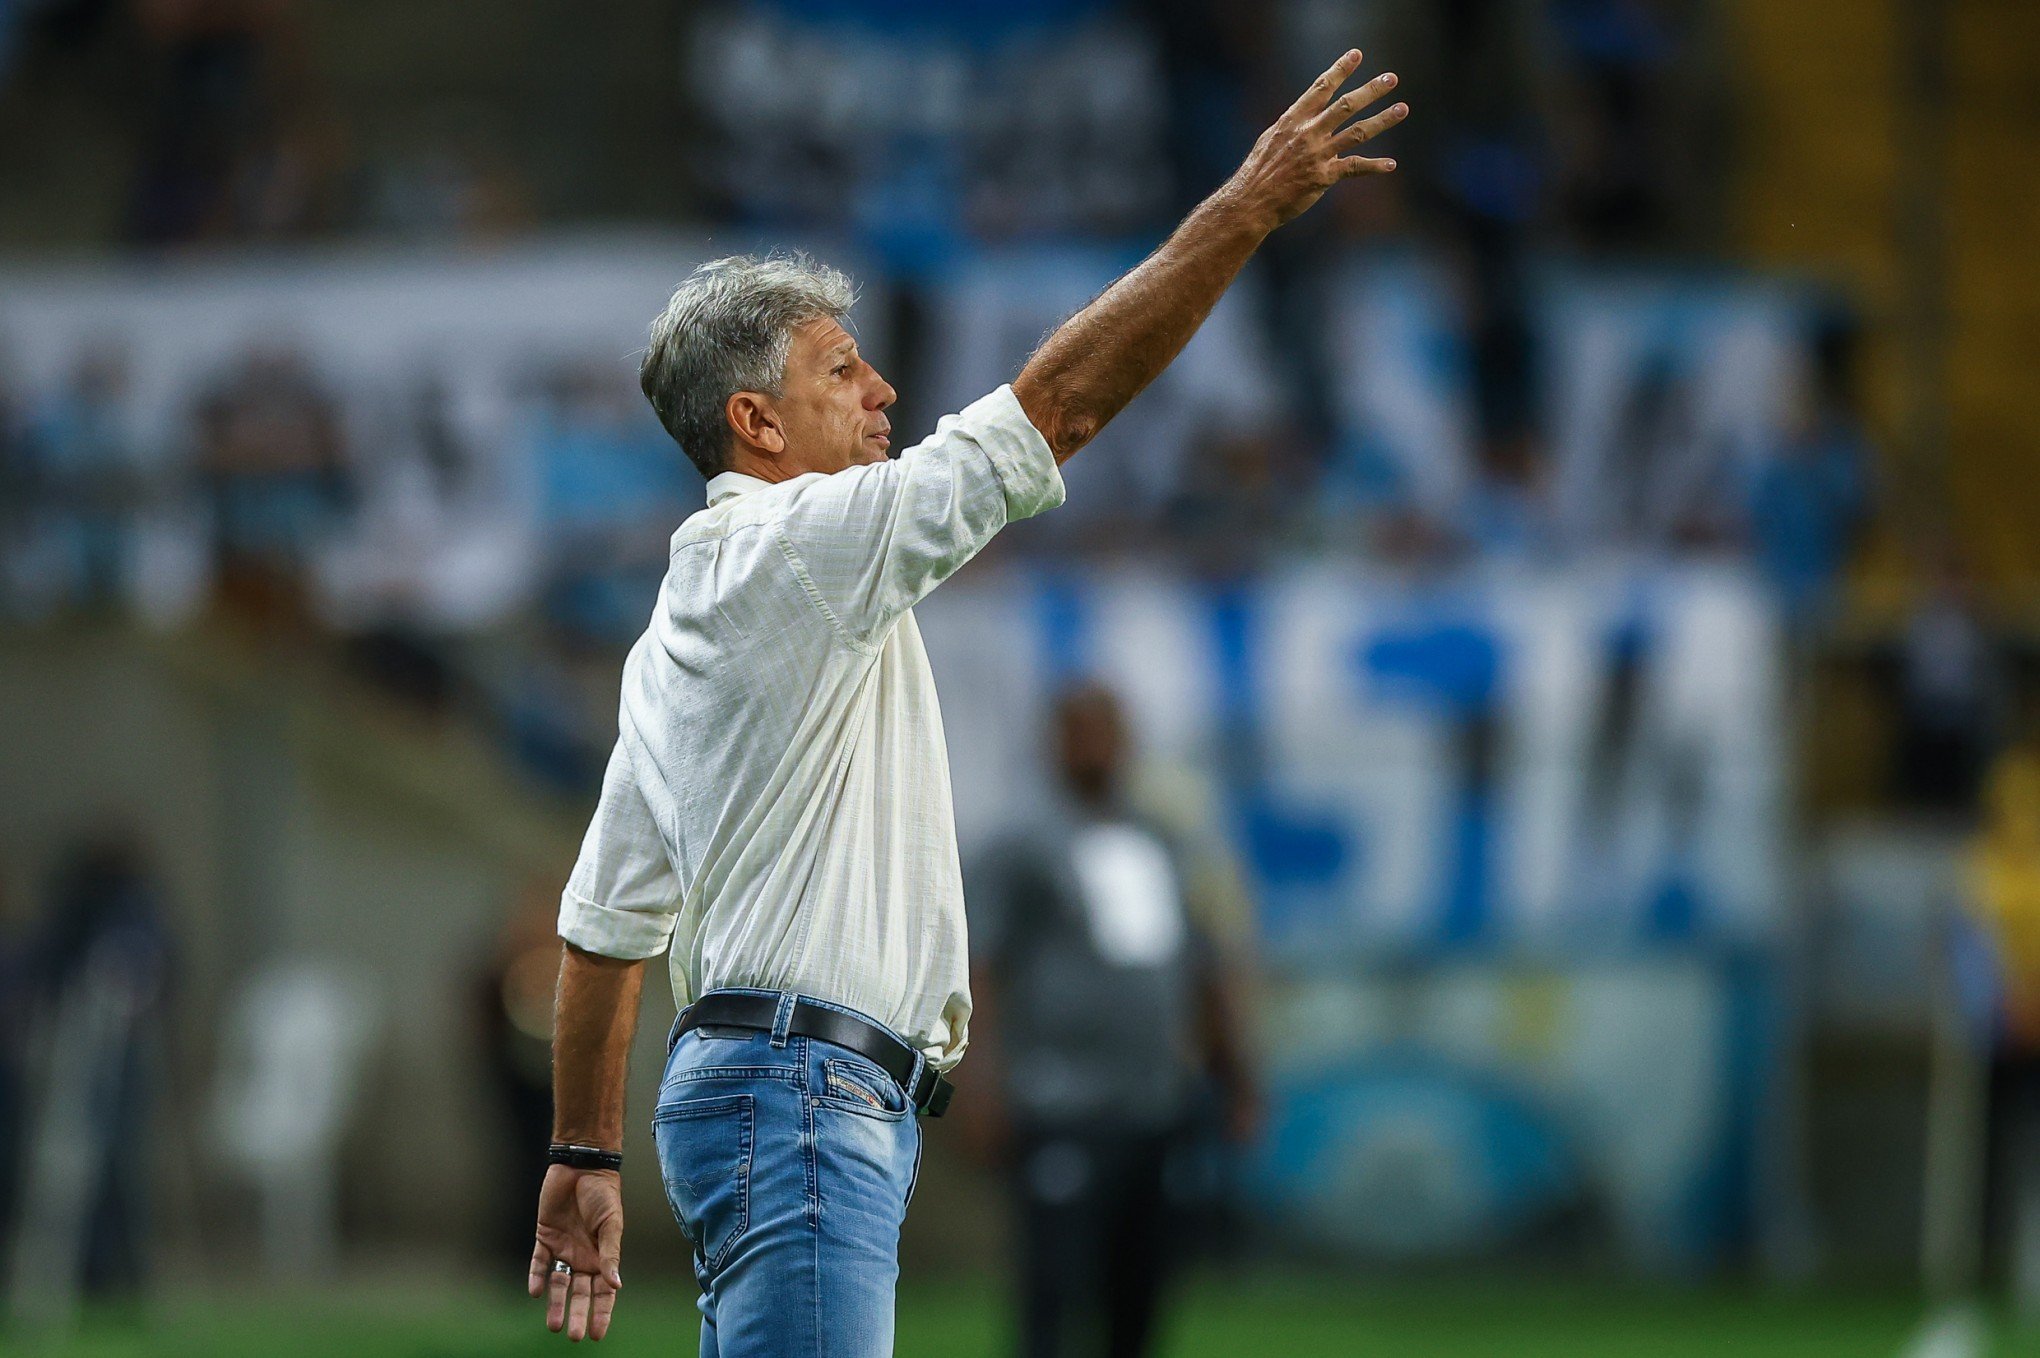 Renato Gaúcho avalia vitória sobre o Noia e fala de contratações: "Mandei mensagem para o Suárez"